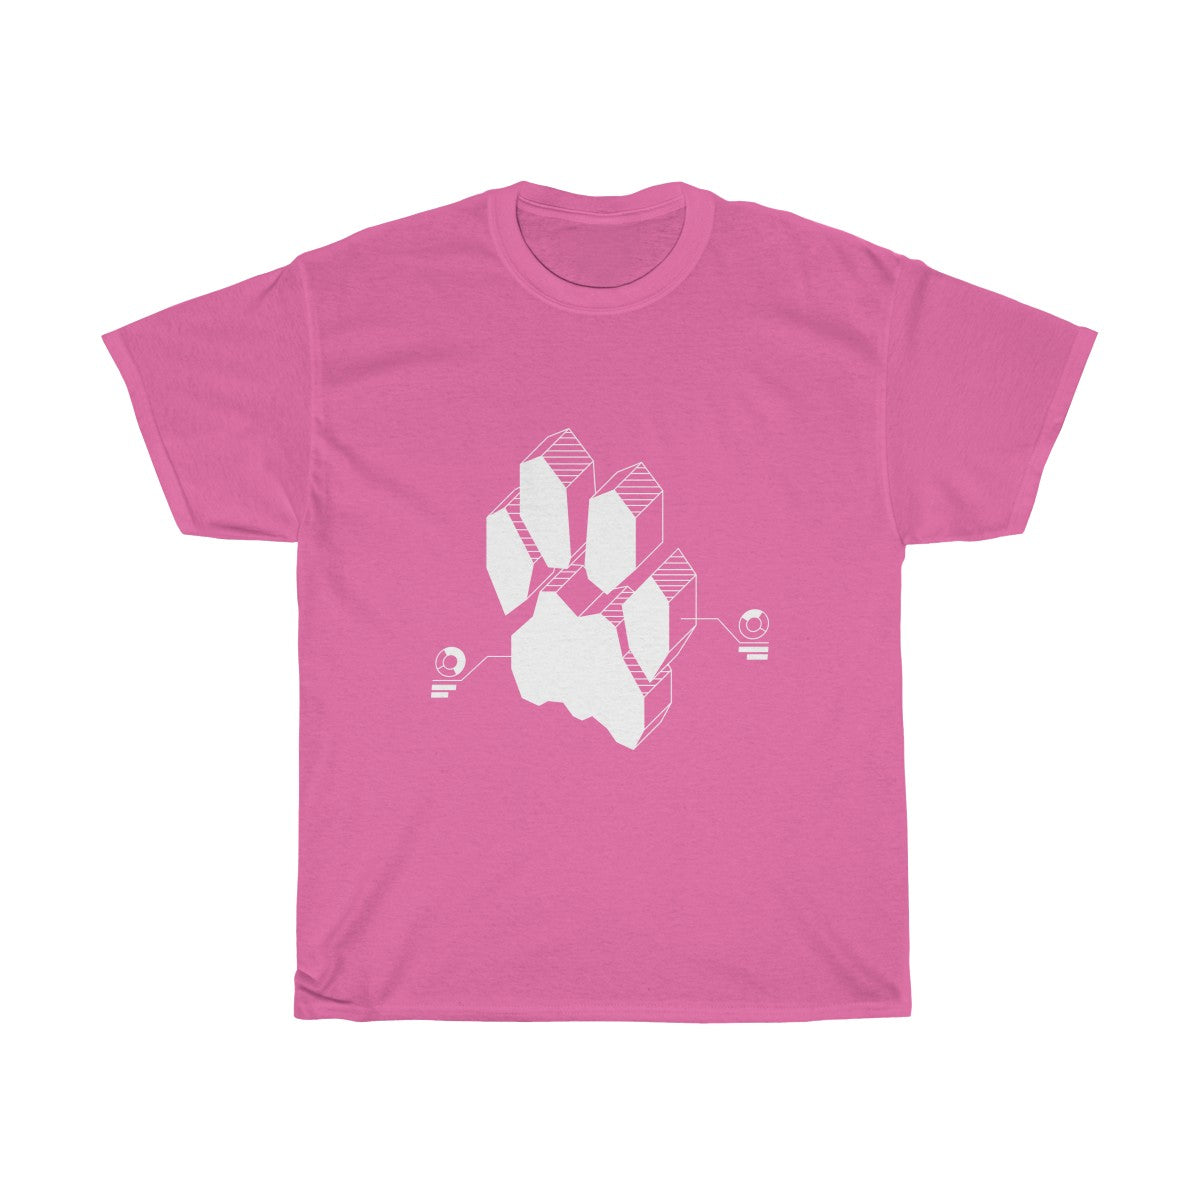 Techno Feline - T-Shirt T-Shirt Wexon Pink S 